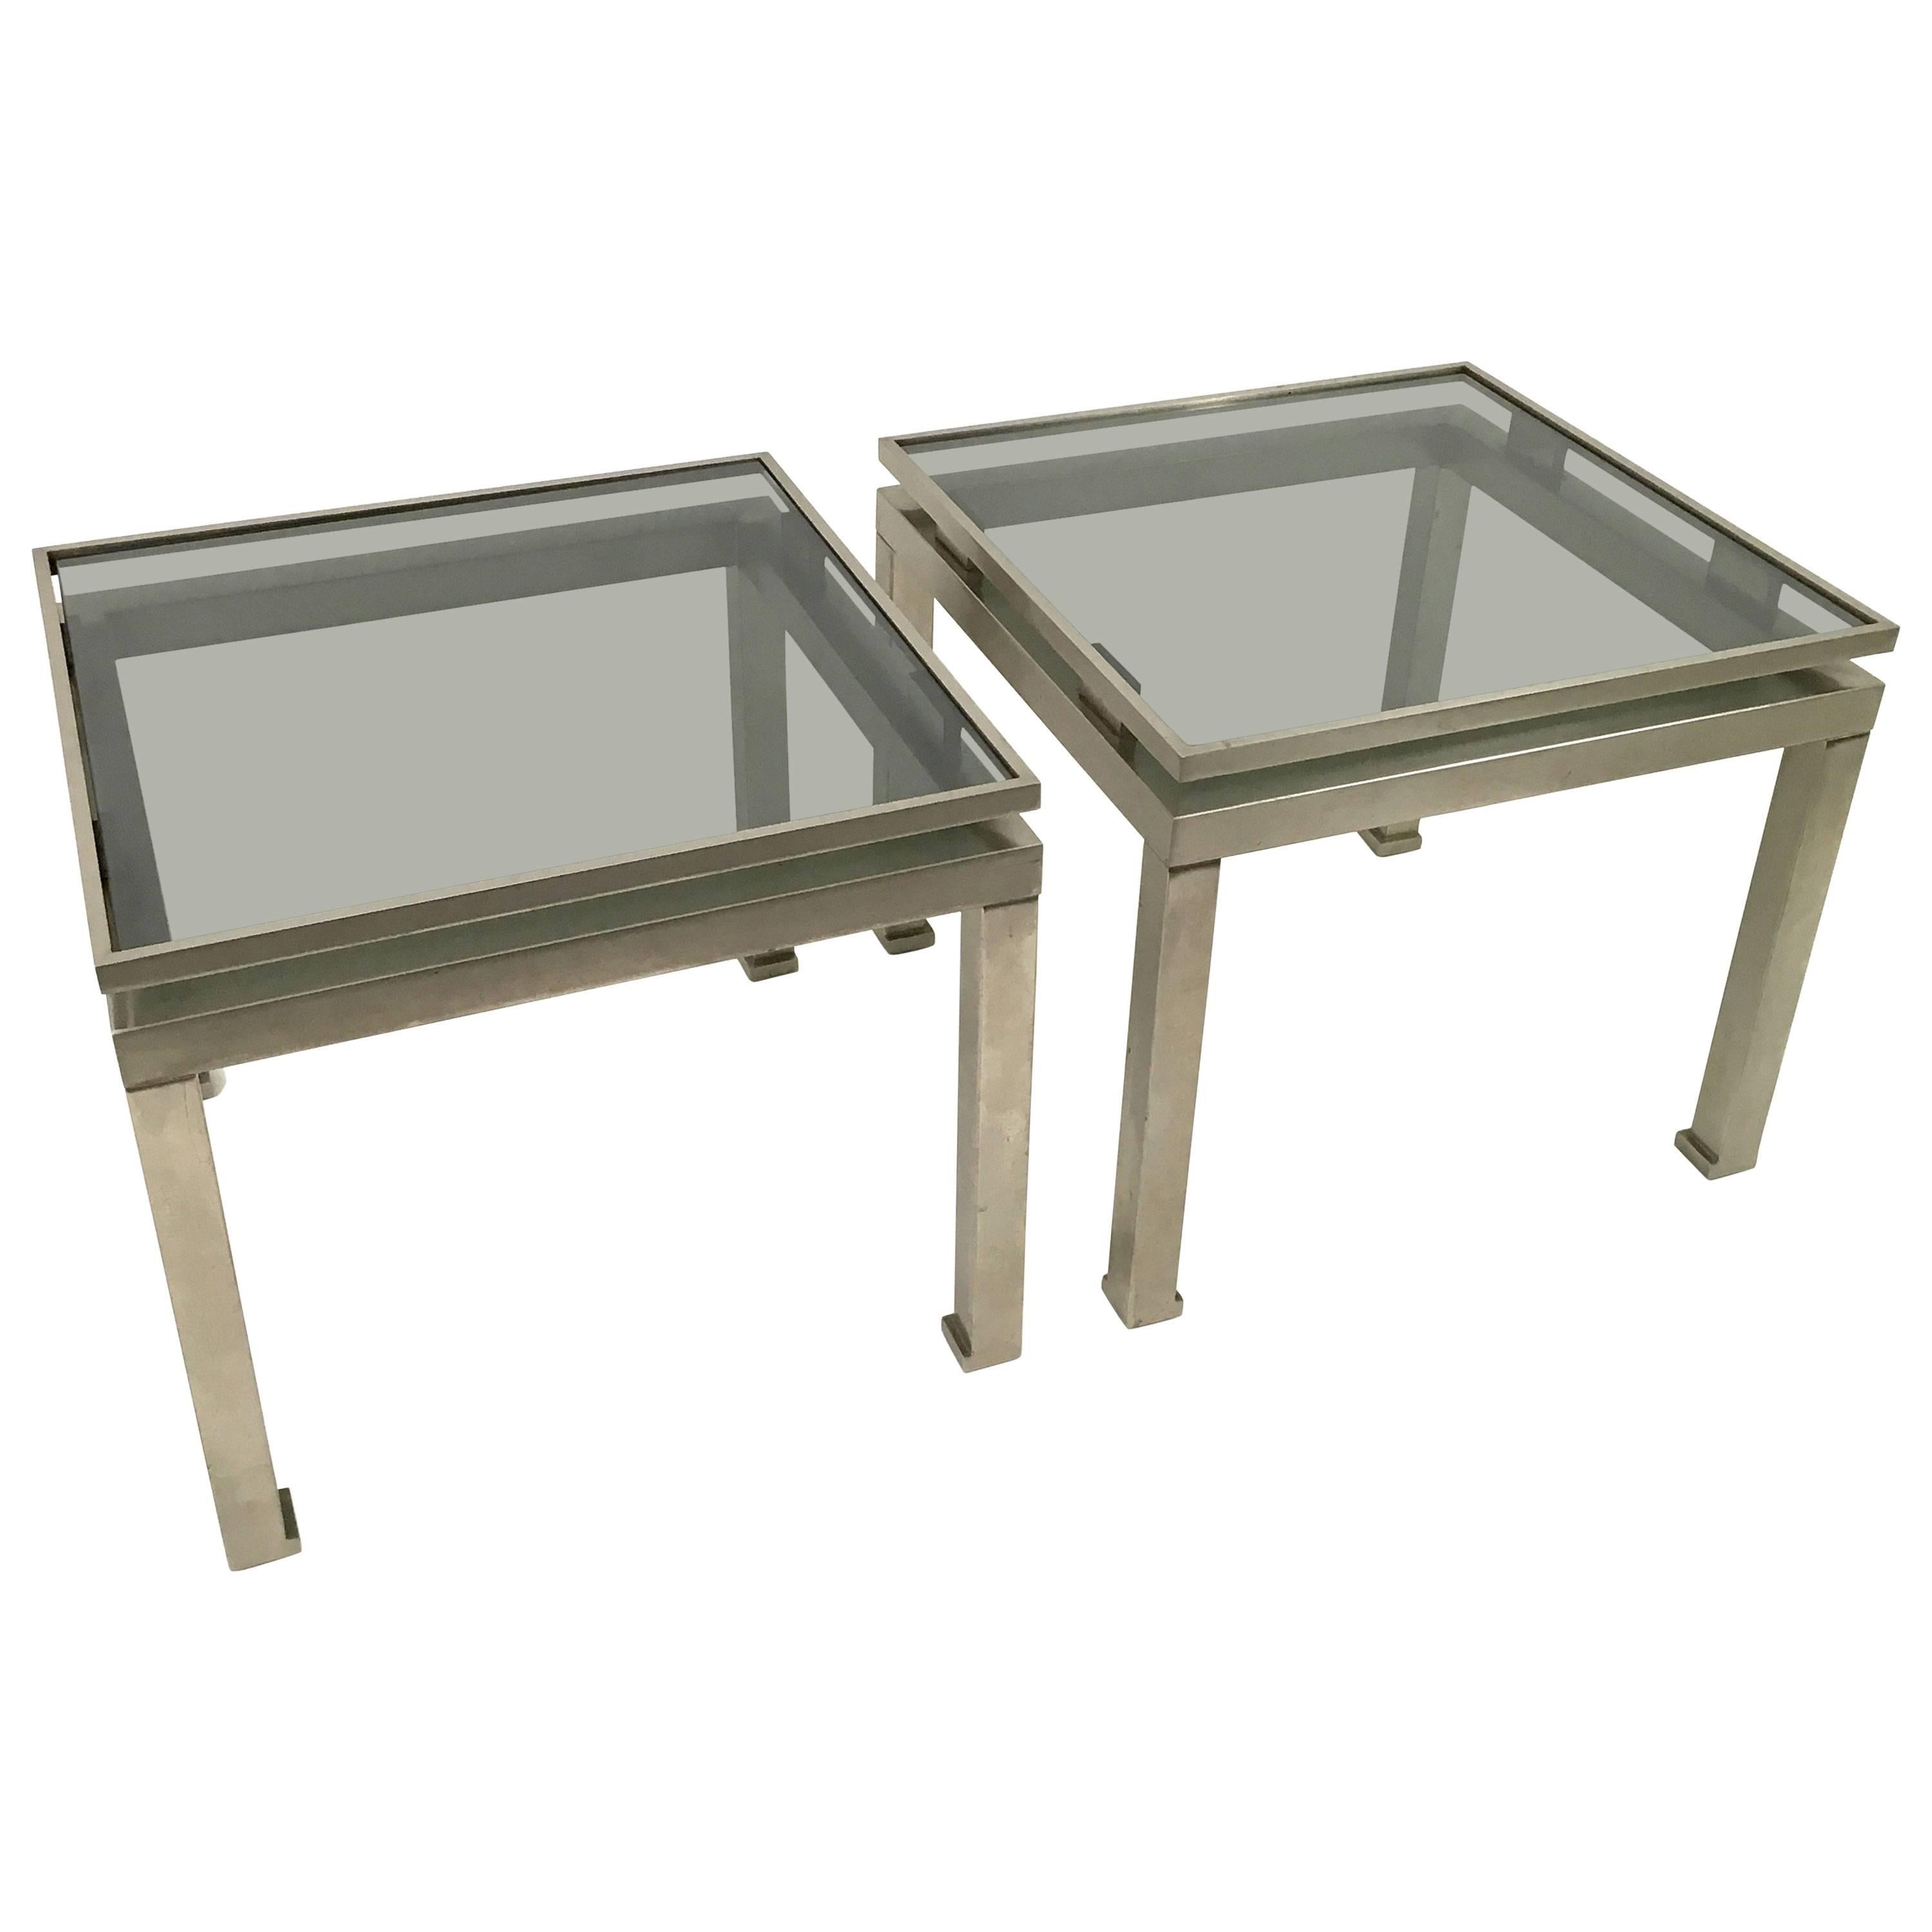 Guy Lefevre Stainless Steel Side Tables For Sale